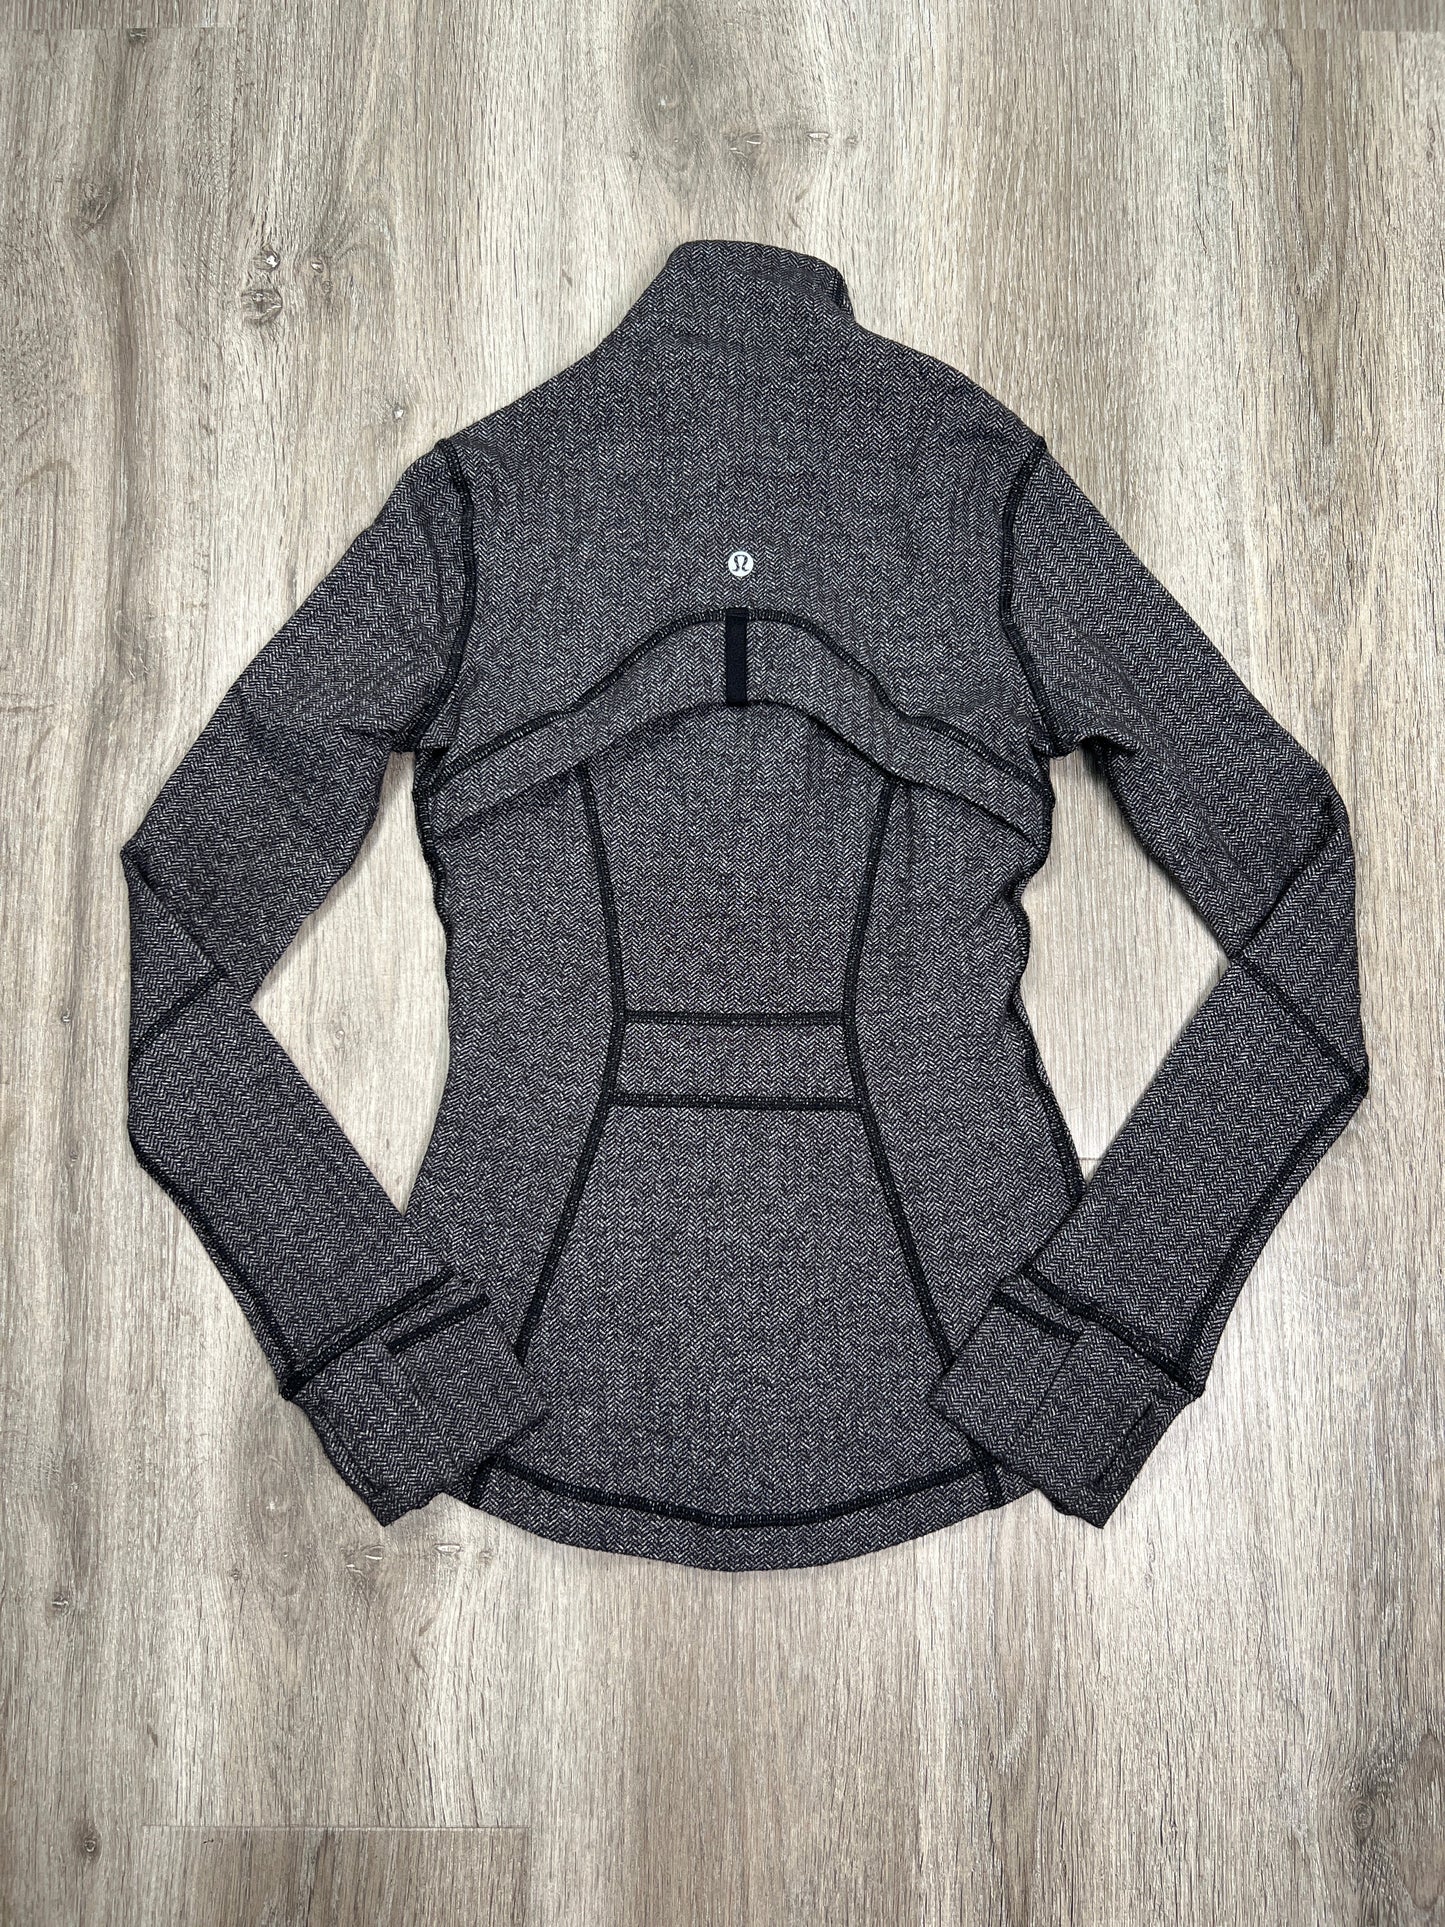 Black & Grey Athletic Jacket Lululemon, Size Xs